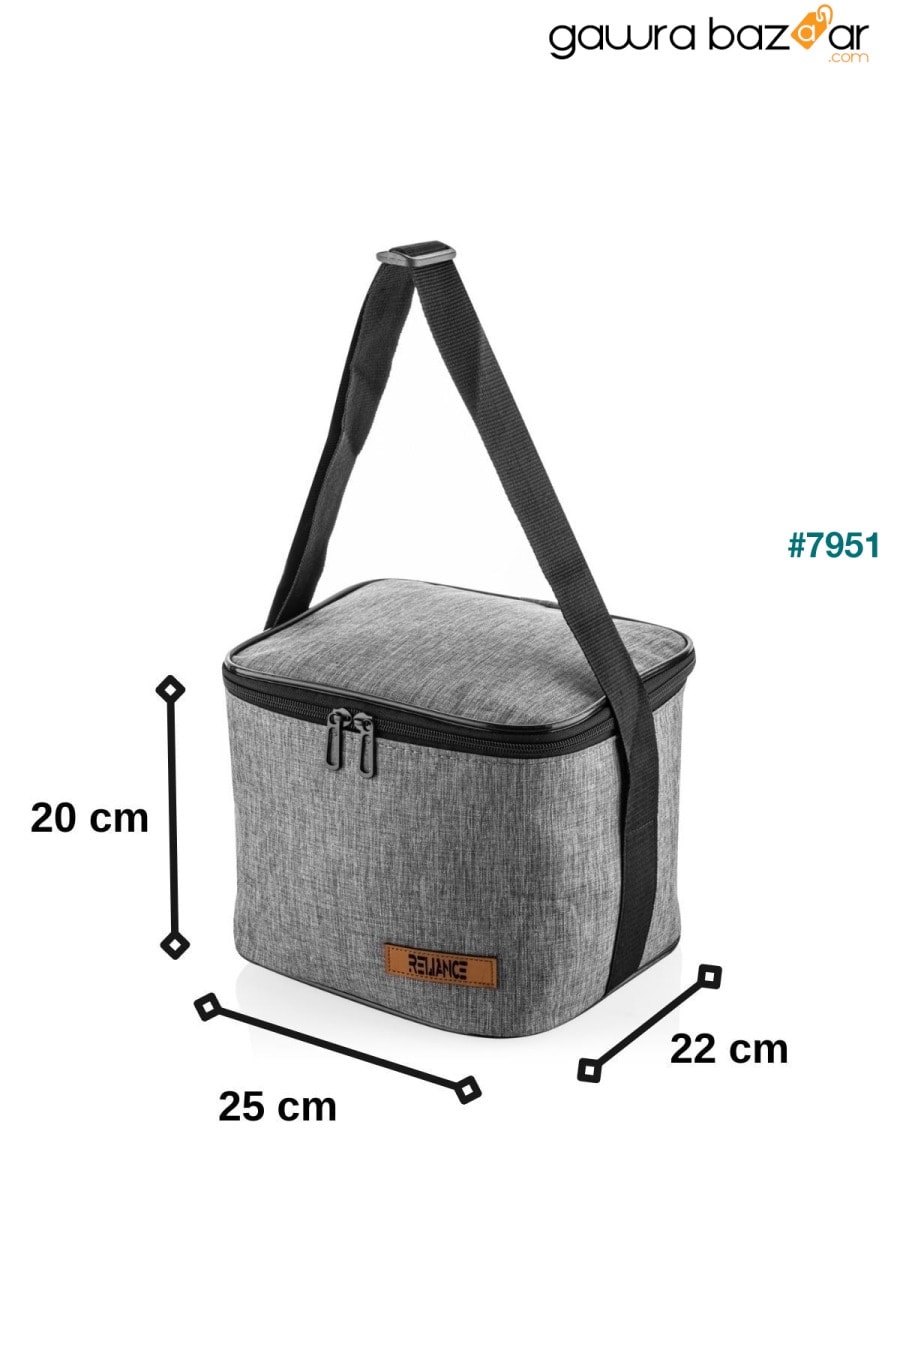 حقيبة نزهة مبردة للتغذية الحرارية سعة 10 لترات - قطعتان من بطاريات الثلج كهدية RELIANCE 3